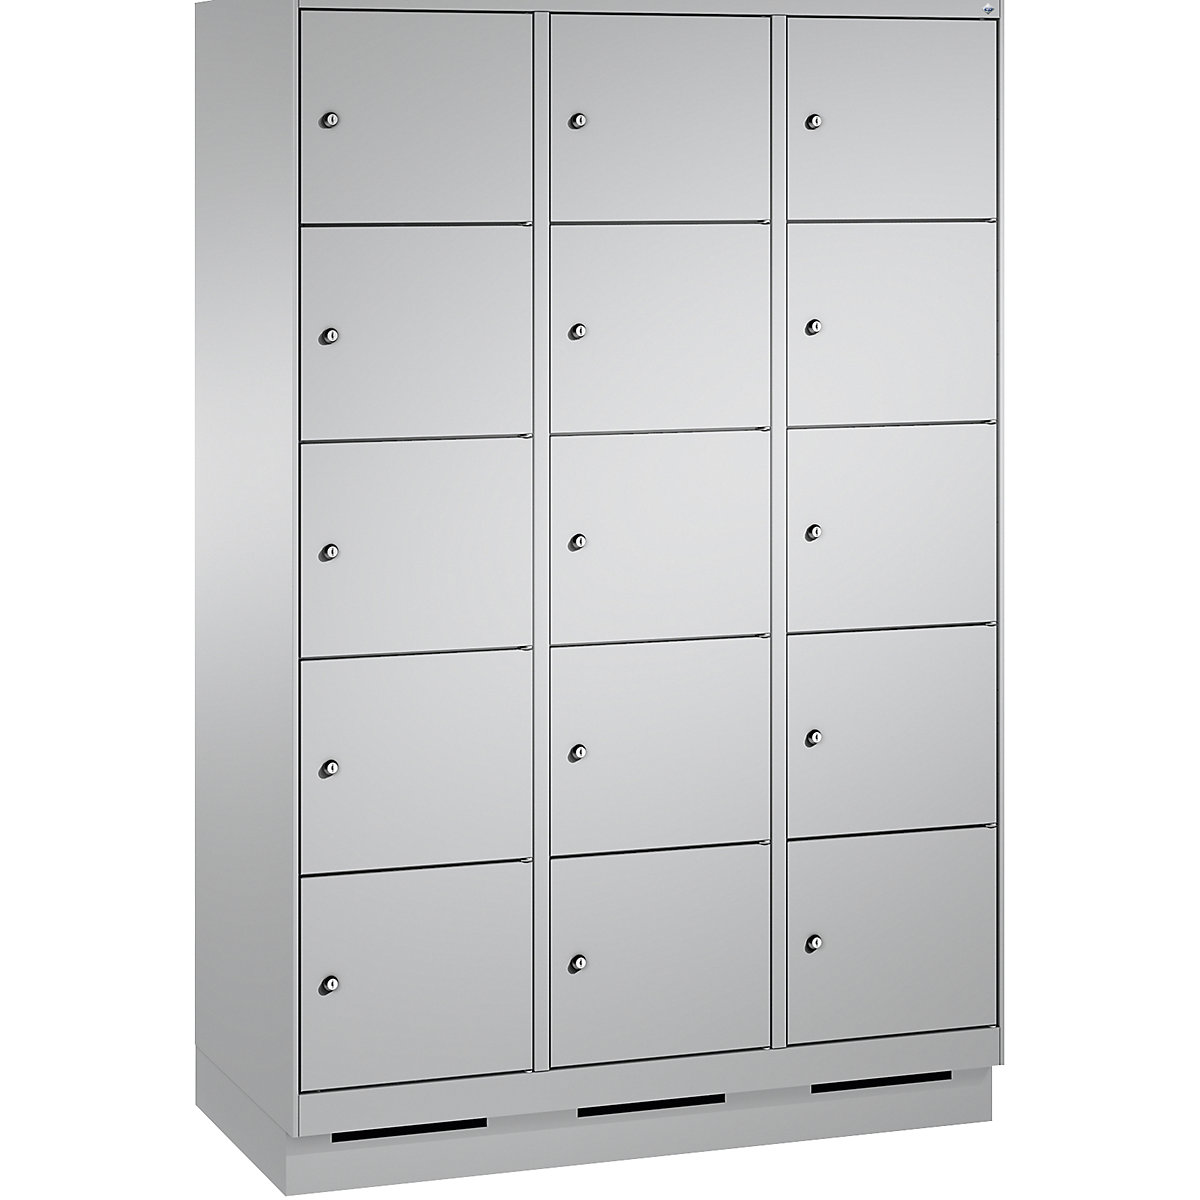 Armoire à casiers sur socle EVOLO – C+P, 3 compartiments, 5 casiers chacun, largeur compartiments 400 mm, aluminium / aluminium-17